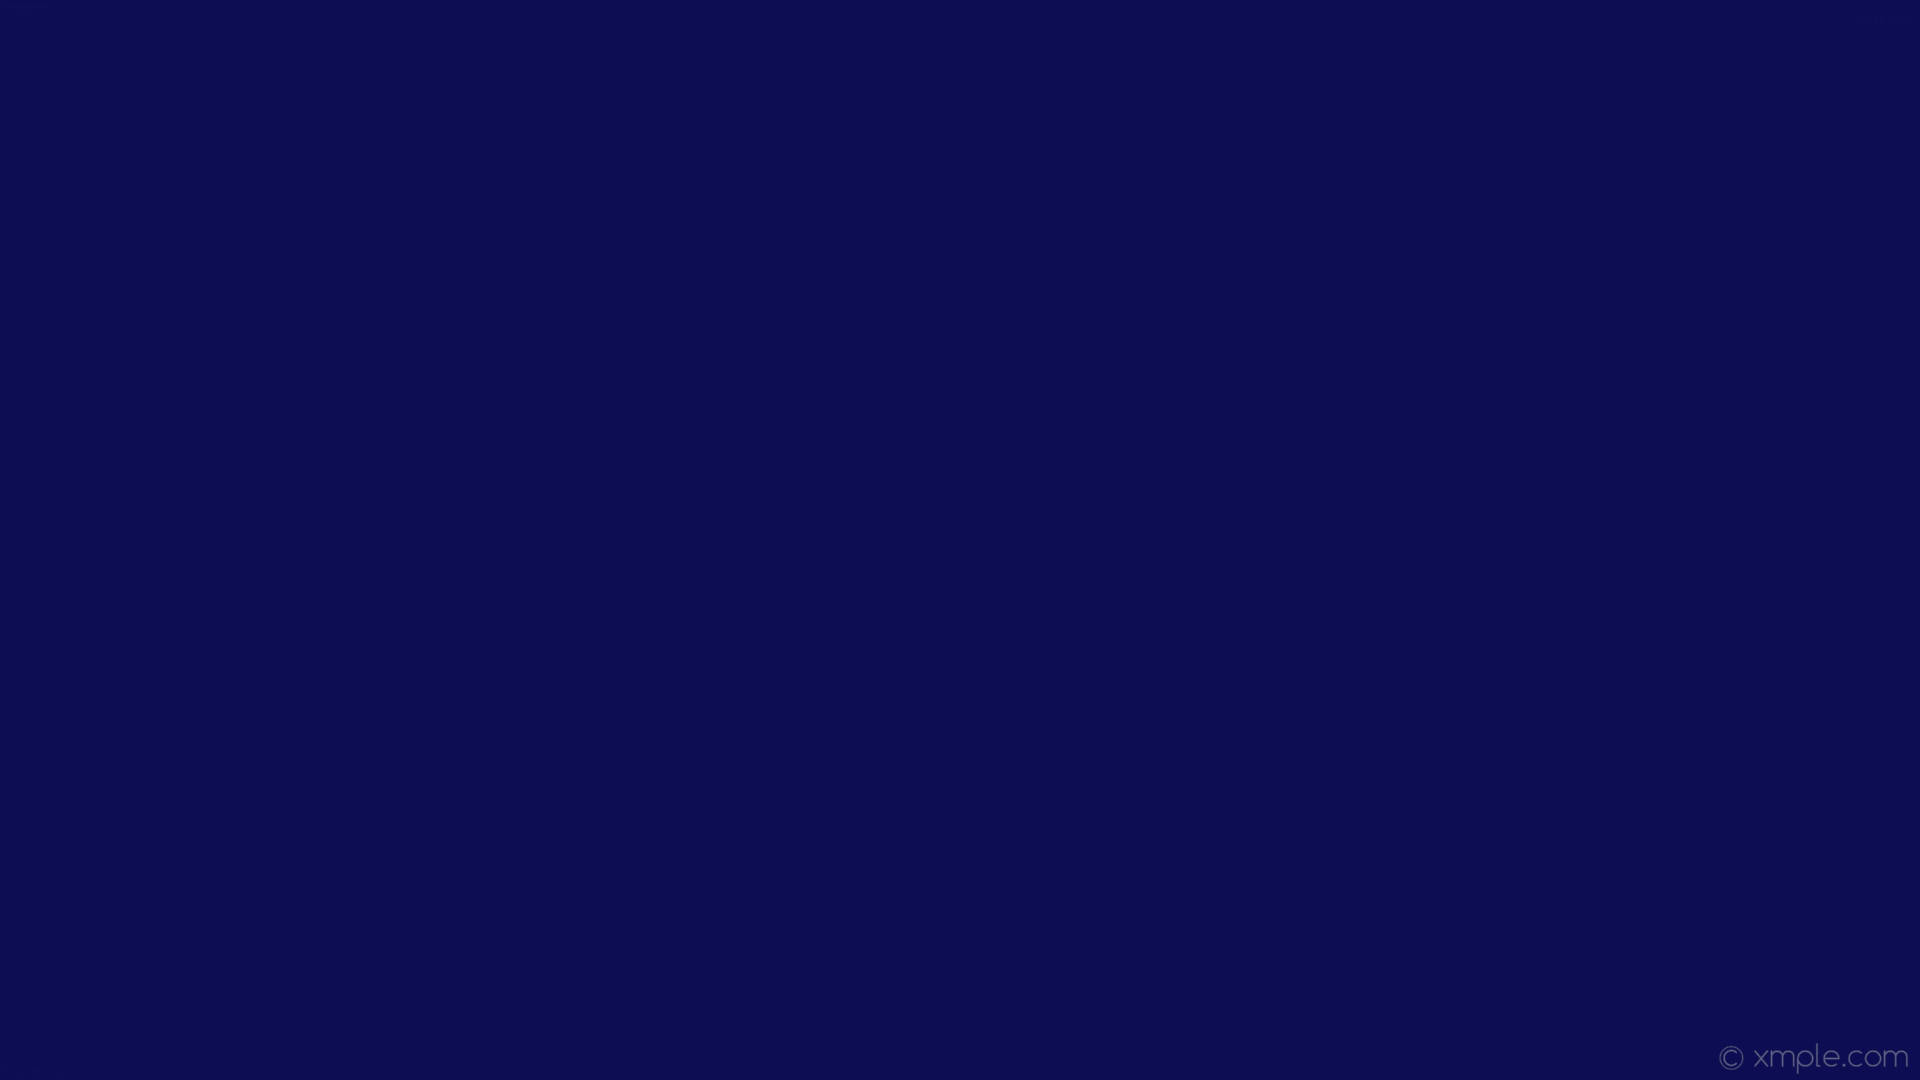 Solid Dark Blue Color Plain Background